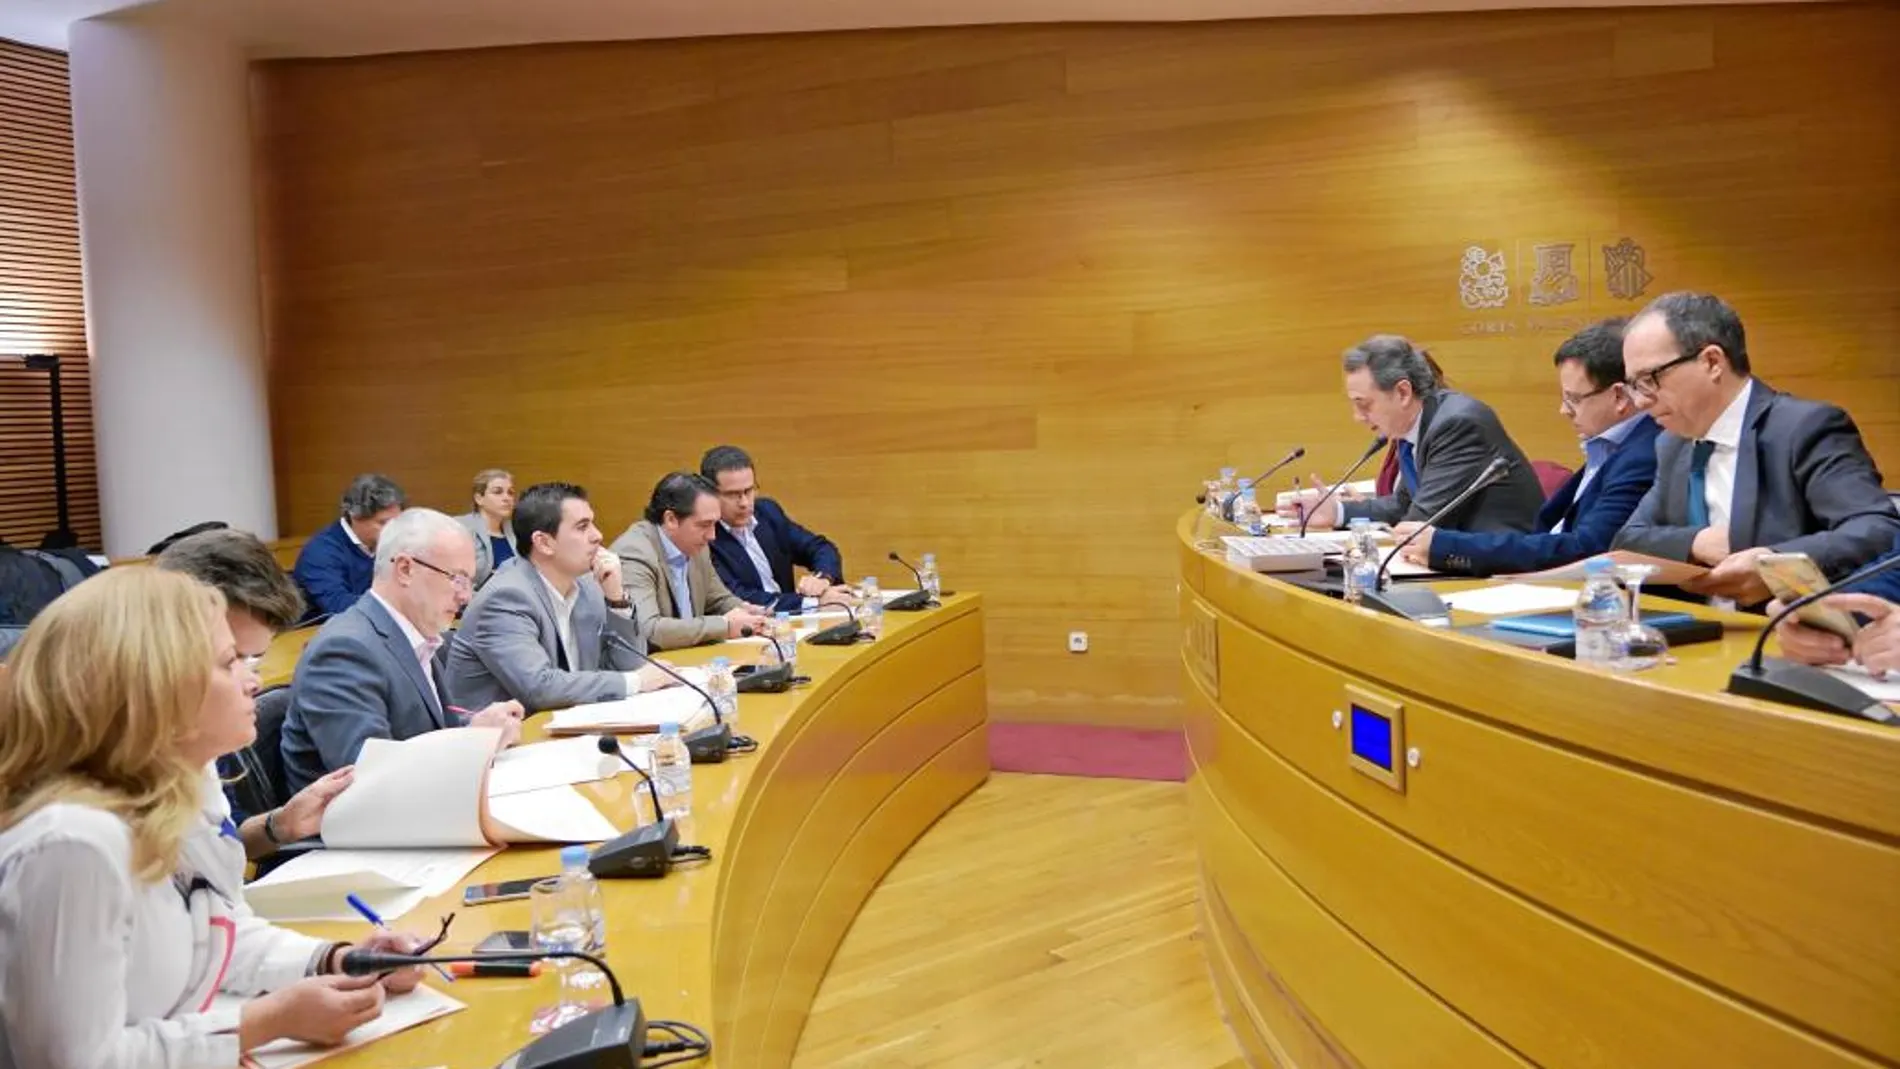 El secretario autonómico, José María Vidal, compareció ante la Comisión parlamentaria de RTVV en Les Corts